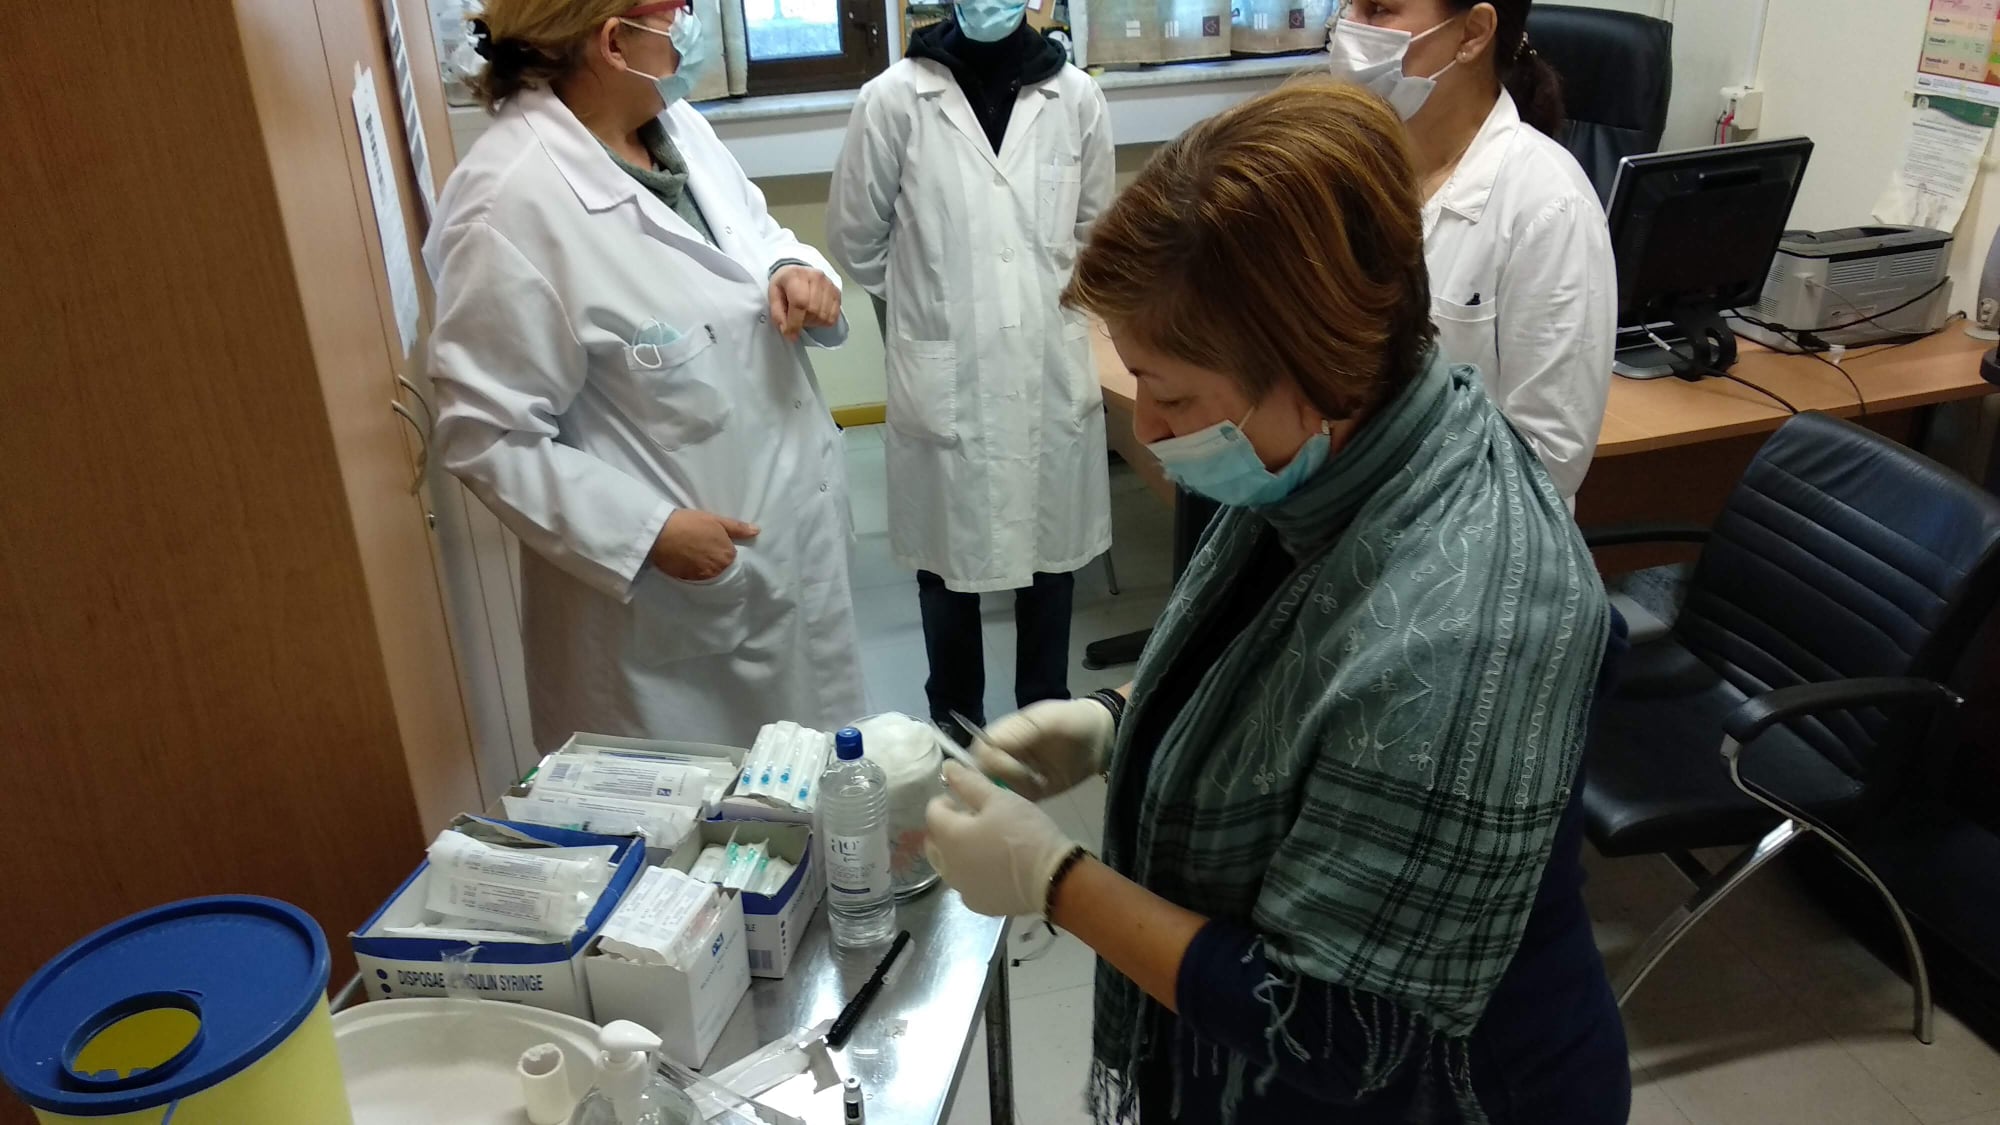 Ξάνθη: Εμβολιαστικό κέντρο στον Εχίνο - Ξεκίνησαν τα εμβόλια